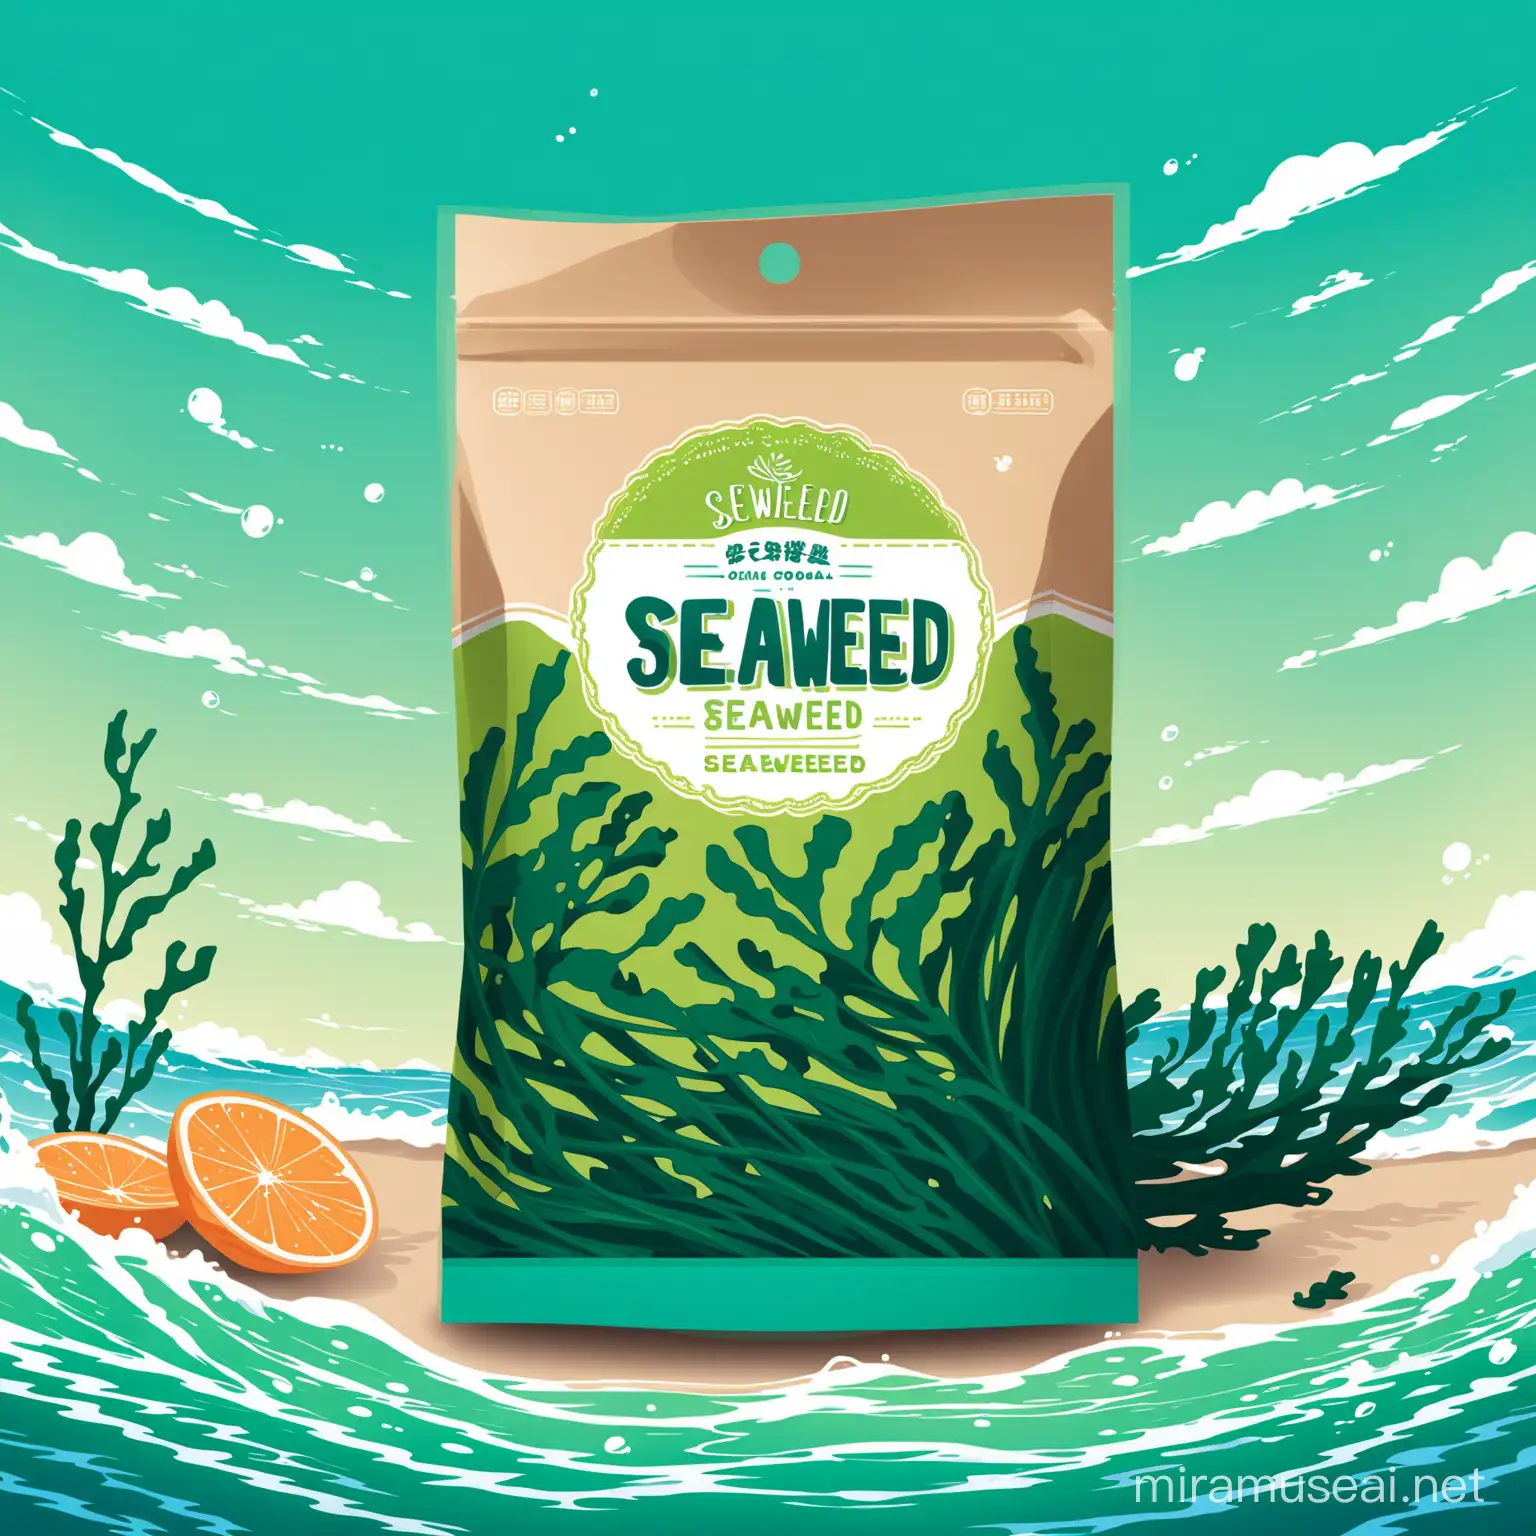 Ocean Themed Seaweed Food Packaging Illustration